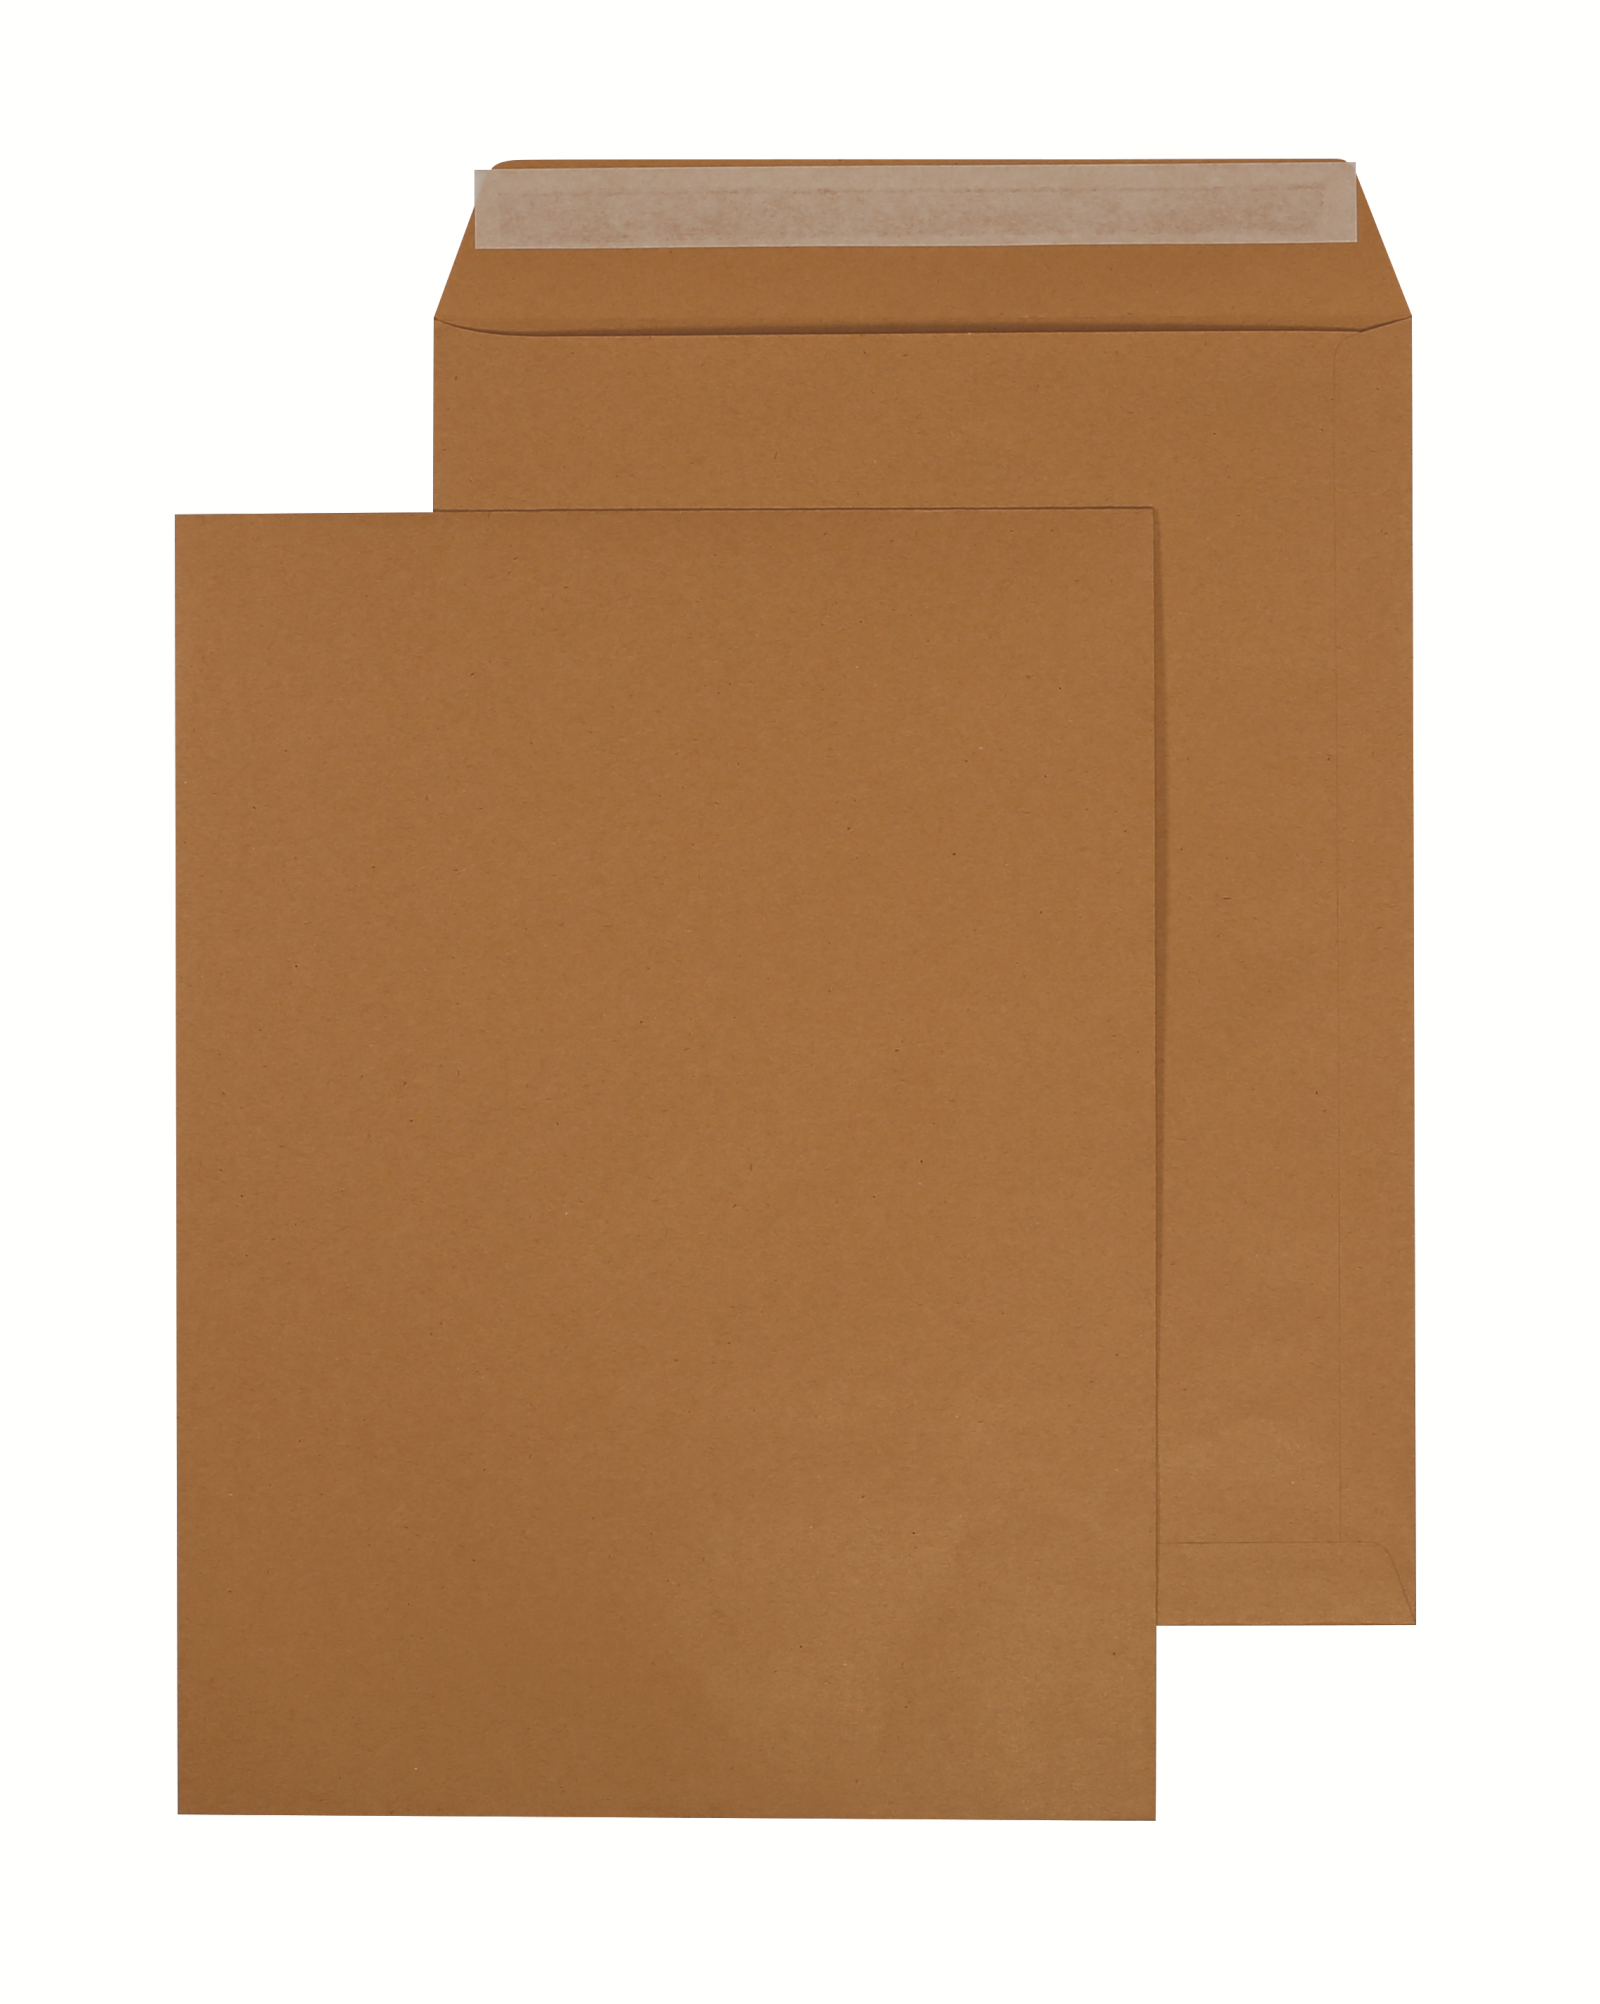 Пакет почтовый формата Е4, объемный, предназначен для объемных тяжелых почтовых отправлений, буклетов, журналов, многостраничных документов, каталогов. Выполнен из крафтовой бумаги повышенной плотности - 120 г/м2, тип заклеивания - стрип (отрывная силиконовая лента).